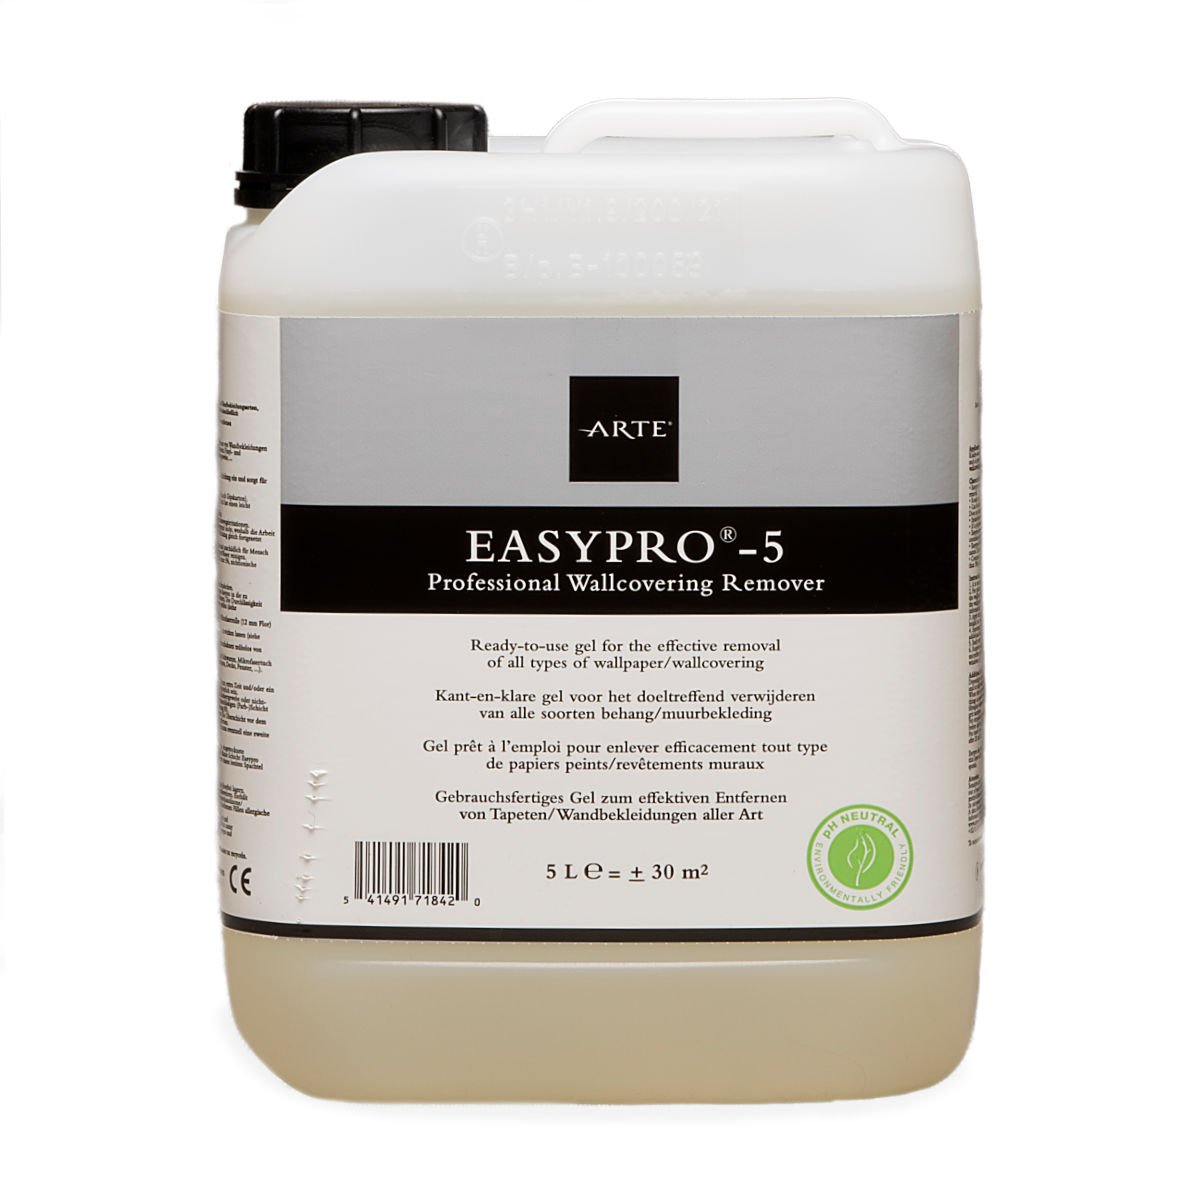 Touhou Uitlijnen aansporing Arte Easypro-5 Behangverwijderaar - 5 liter (30m2) - kopen? | Be Inhouse